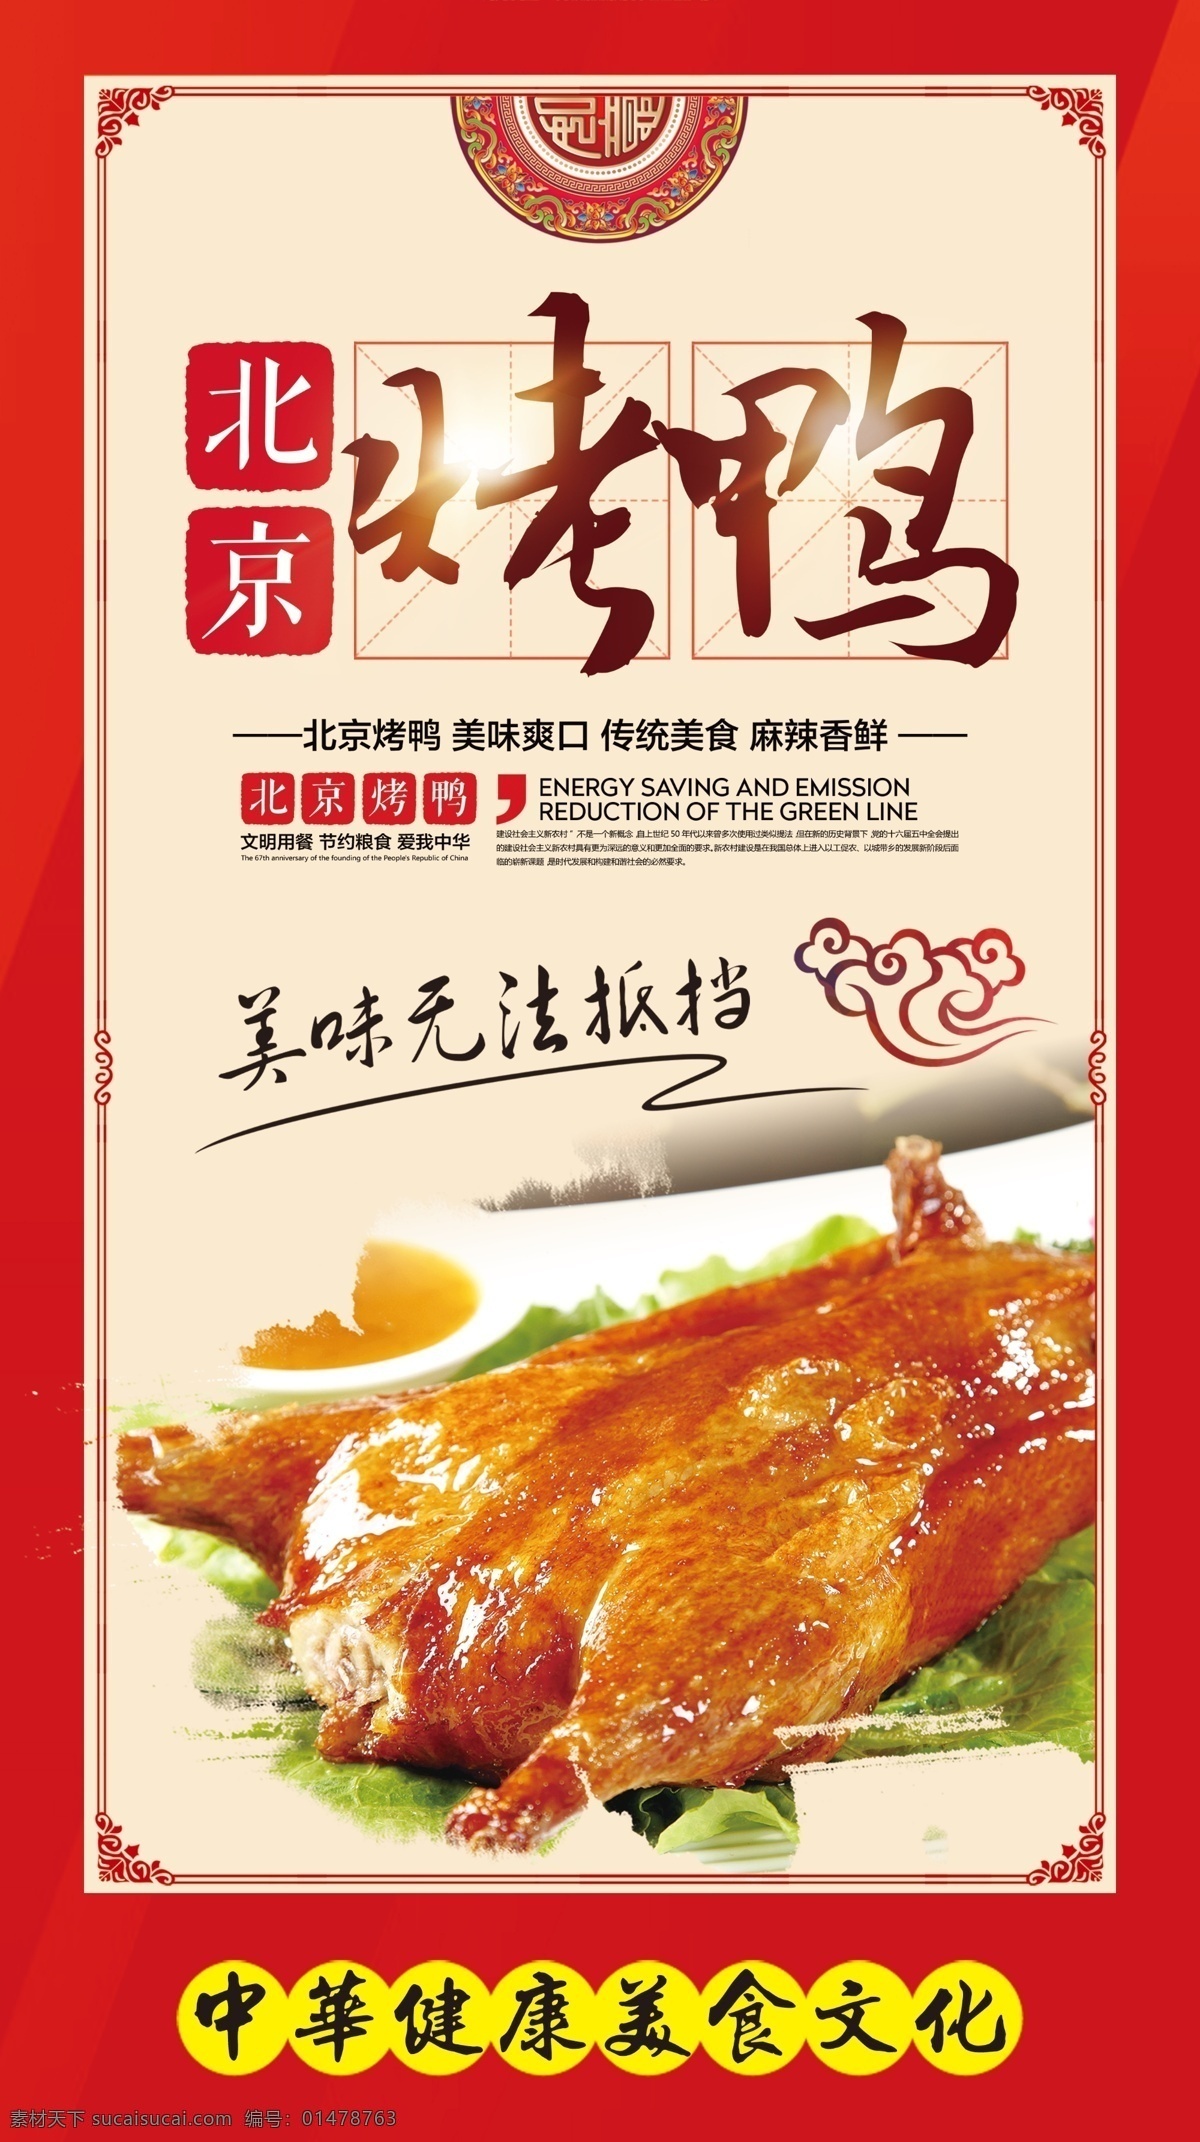 烤鸭海报 烤鸭 北京 美食 美味 无法 抵挡 鸭子 祥云 古典 边框